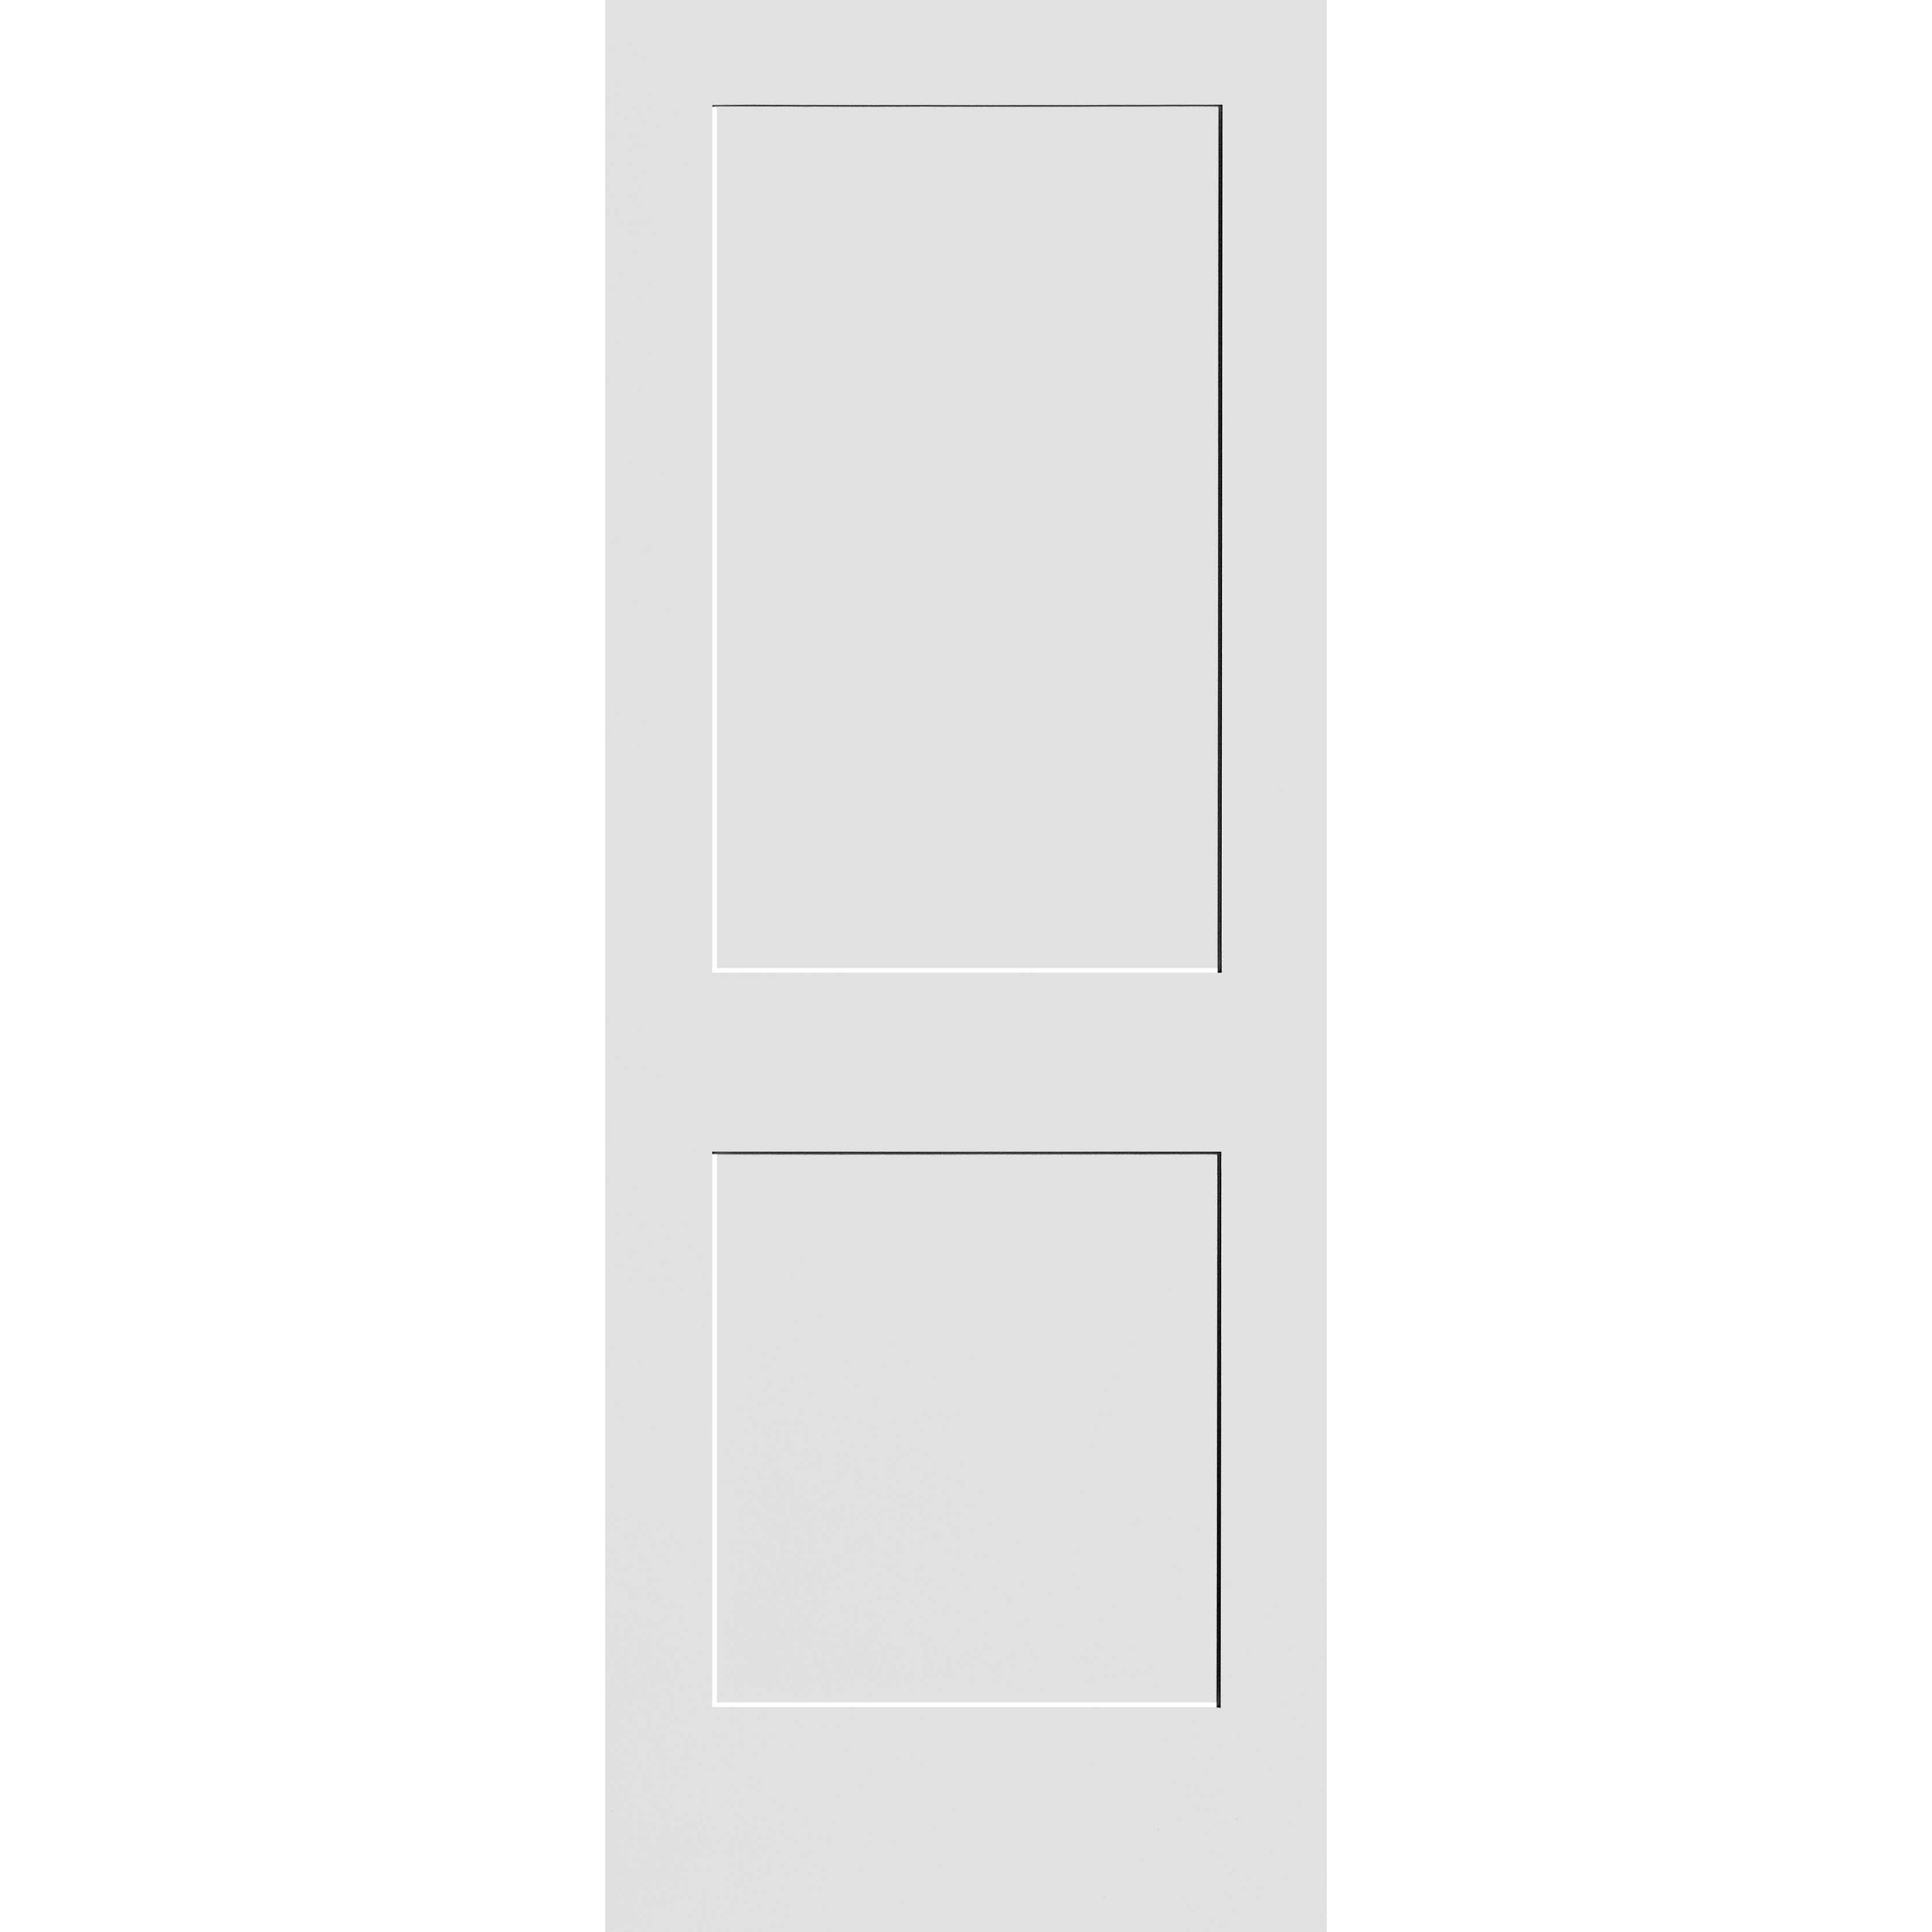 32X96 #8402 MDF PRIMED SHAKER PANEL INTERIOR DOOR